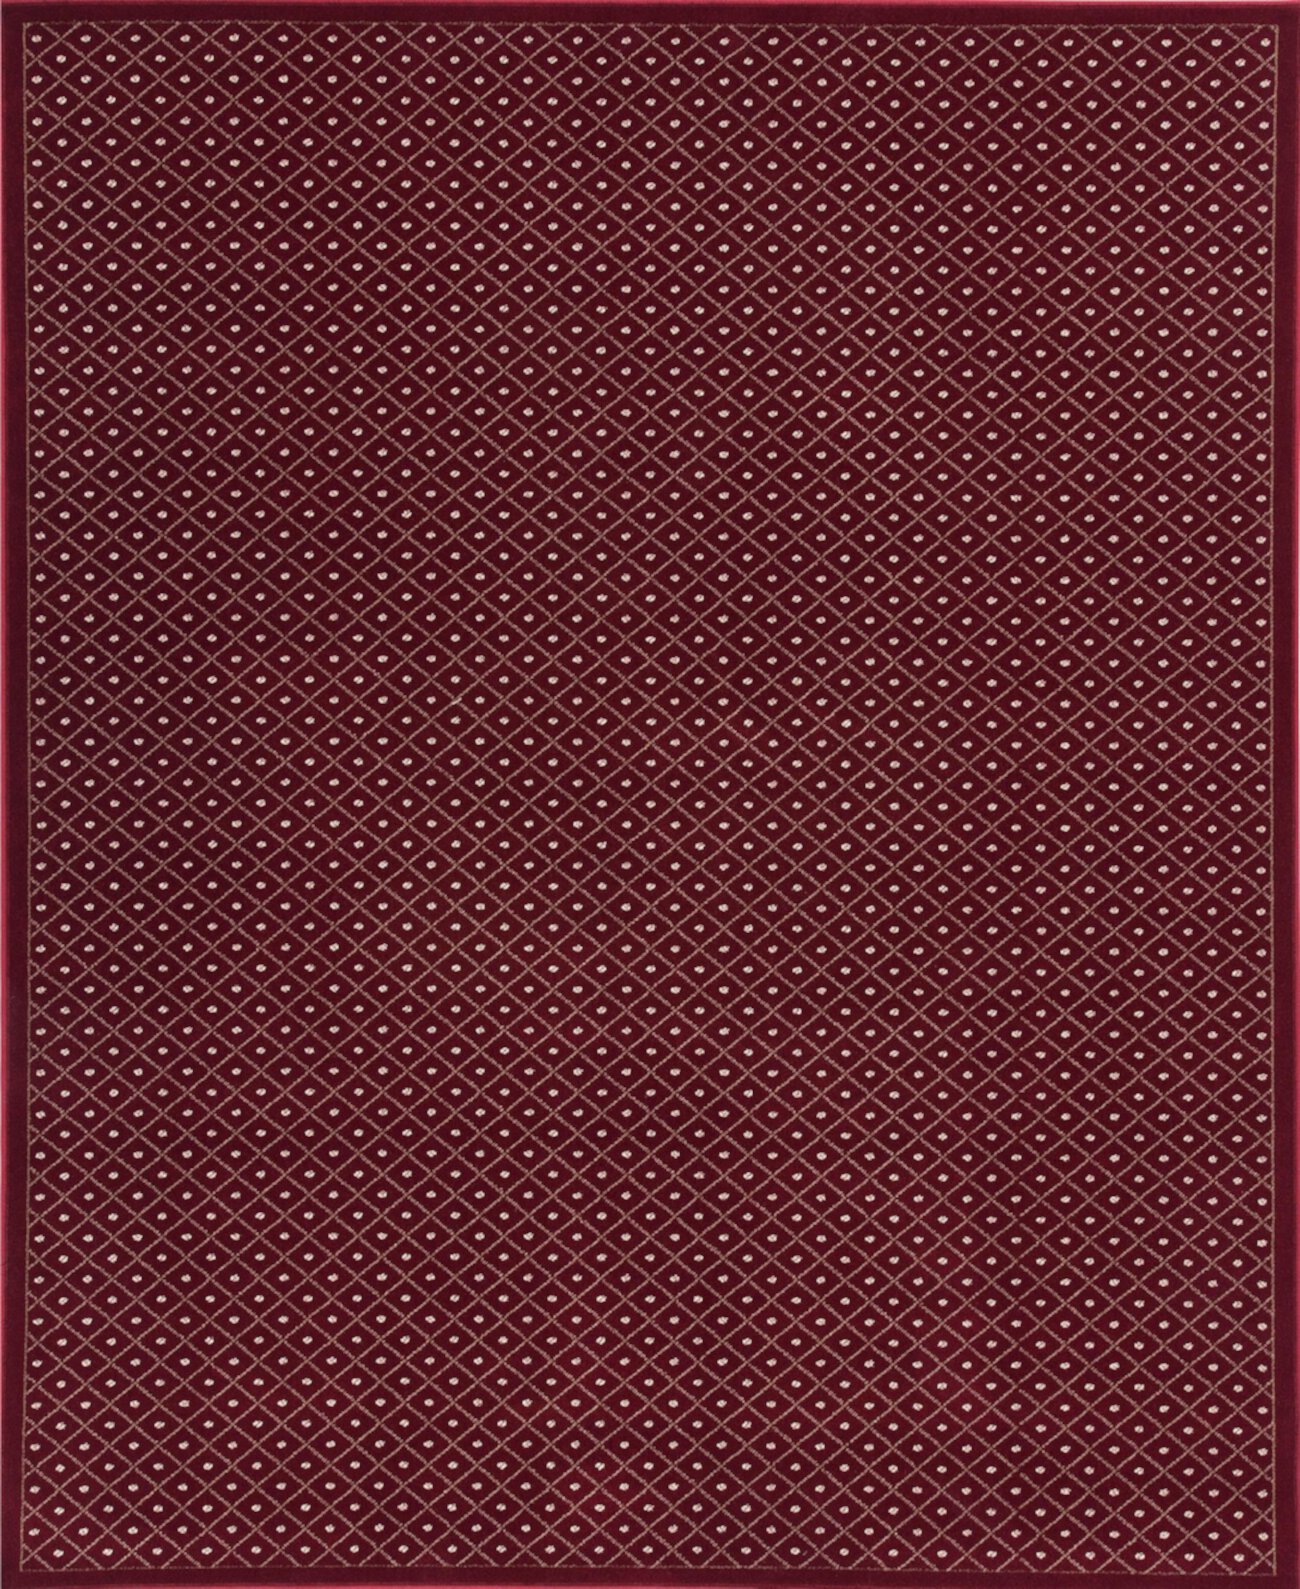 ЗАКРЫТИЕ! 782/1710/RED Pesaro Красный коврик размером 3 фута 3 х 4 фута 11 дюймов KM Home